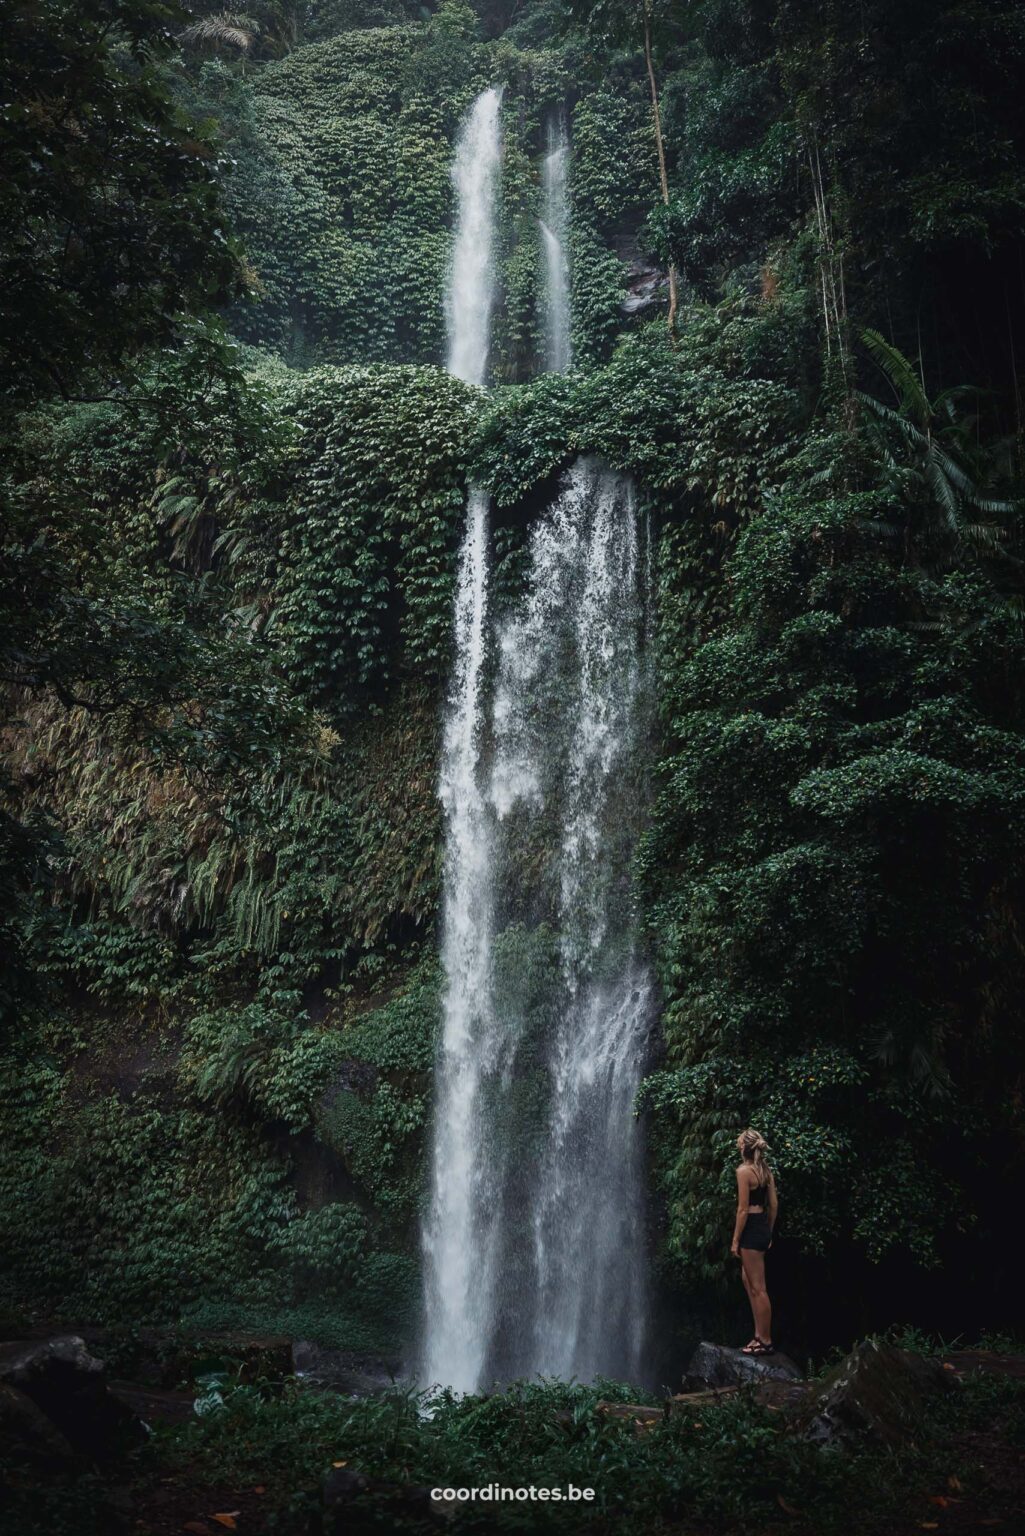 Sendang gile waterfall